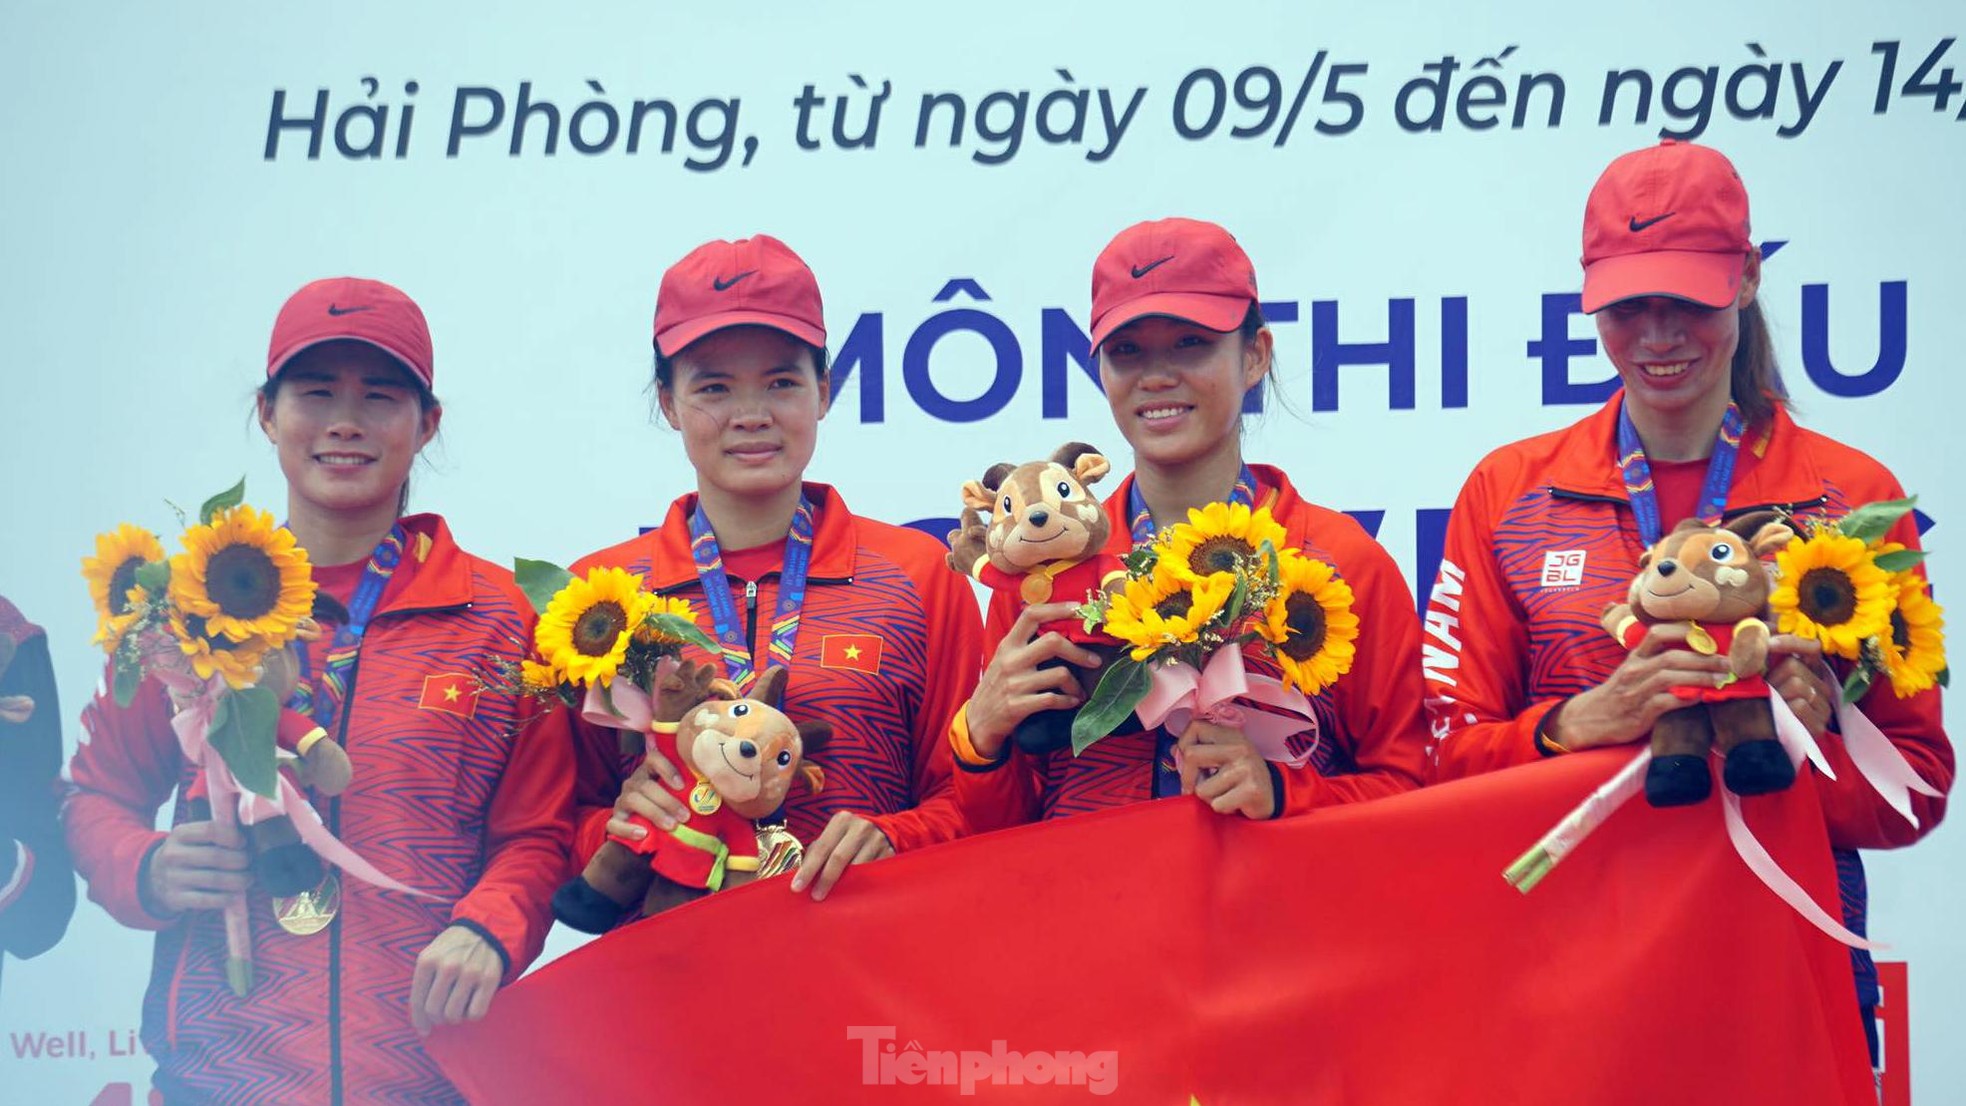 Rowing nữ vượt trội đối thủ, giành thêm 2 HCV cho Việt Nam ảnh 9